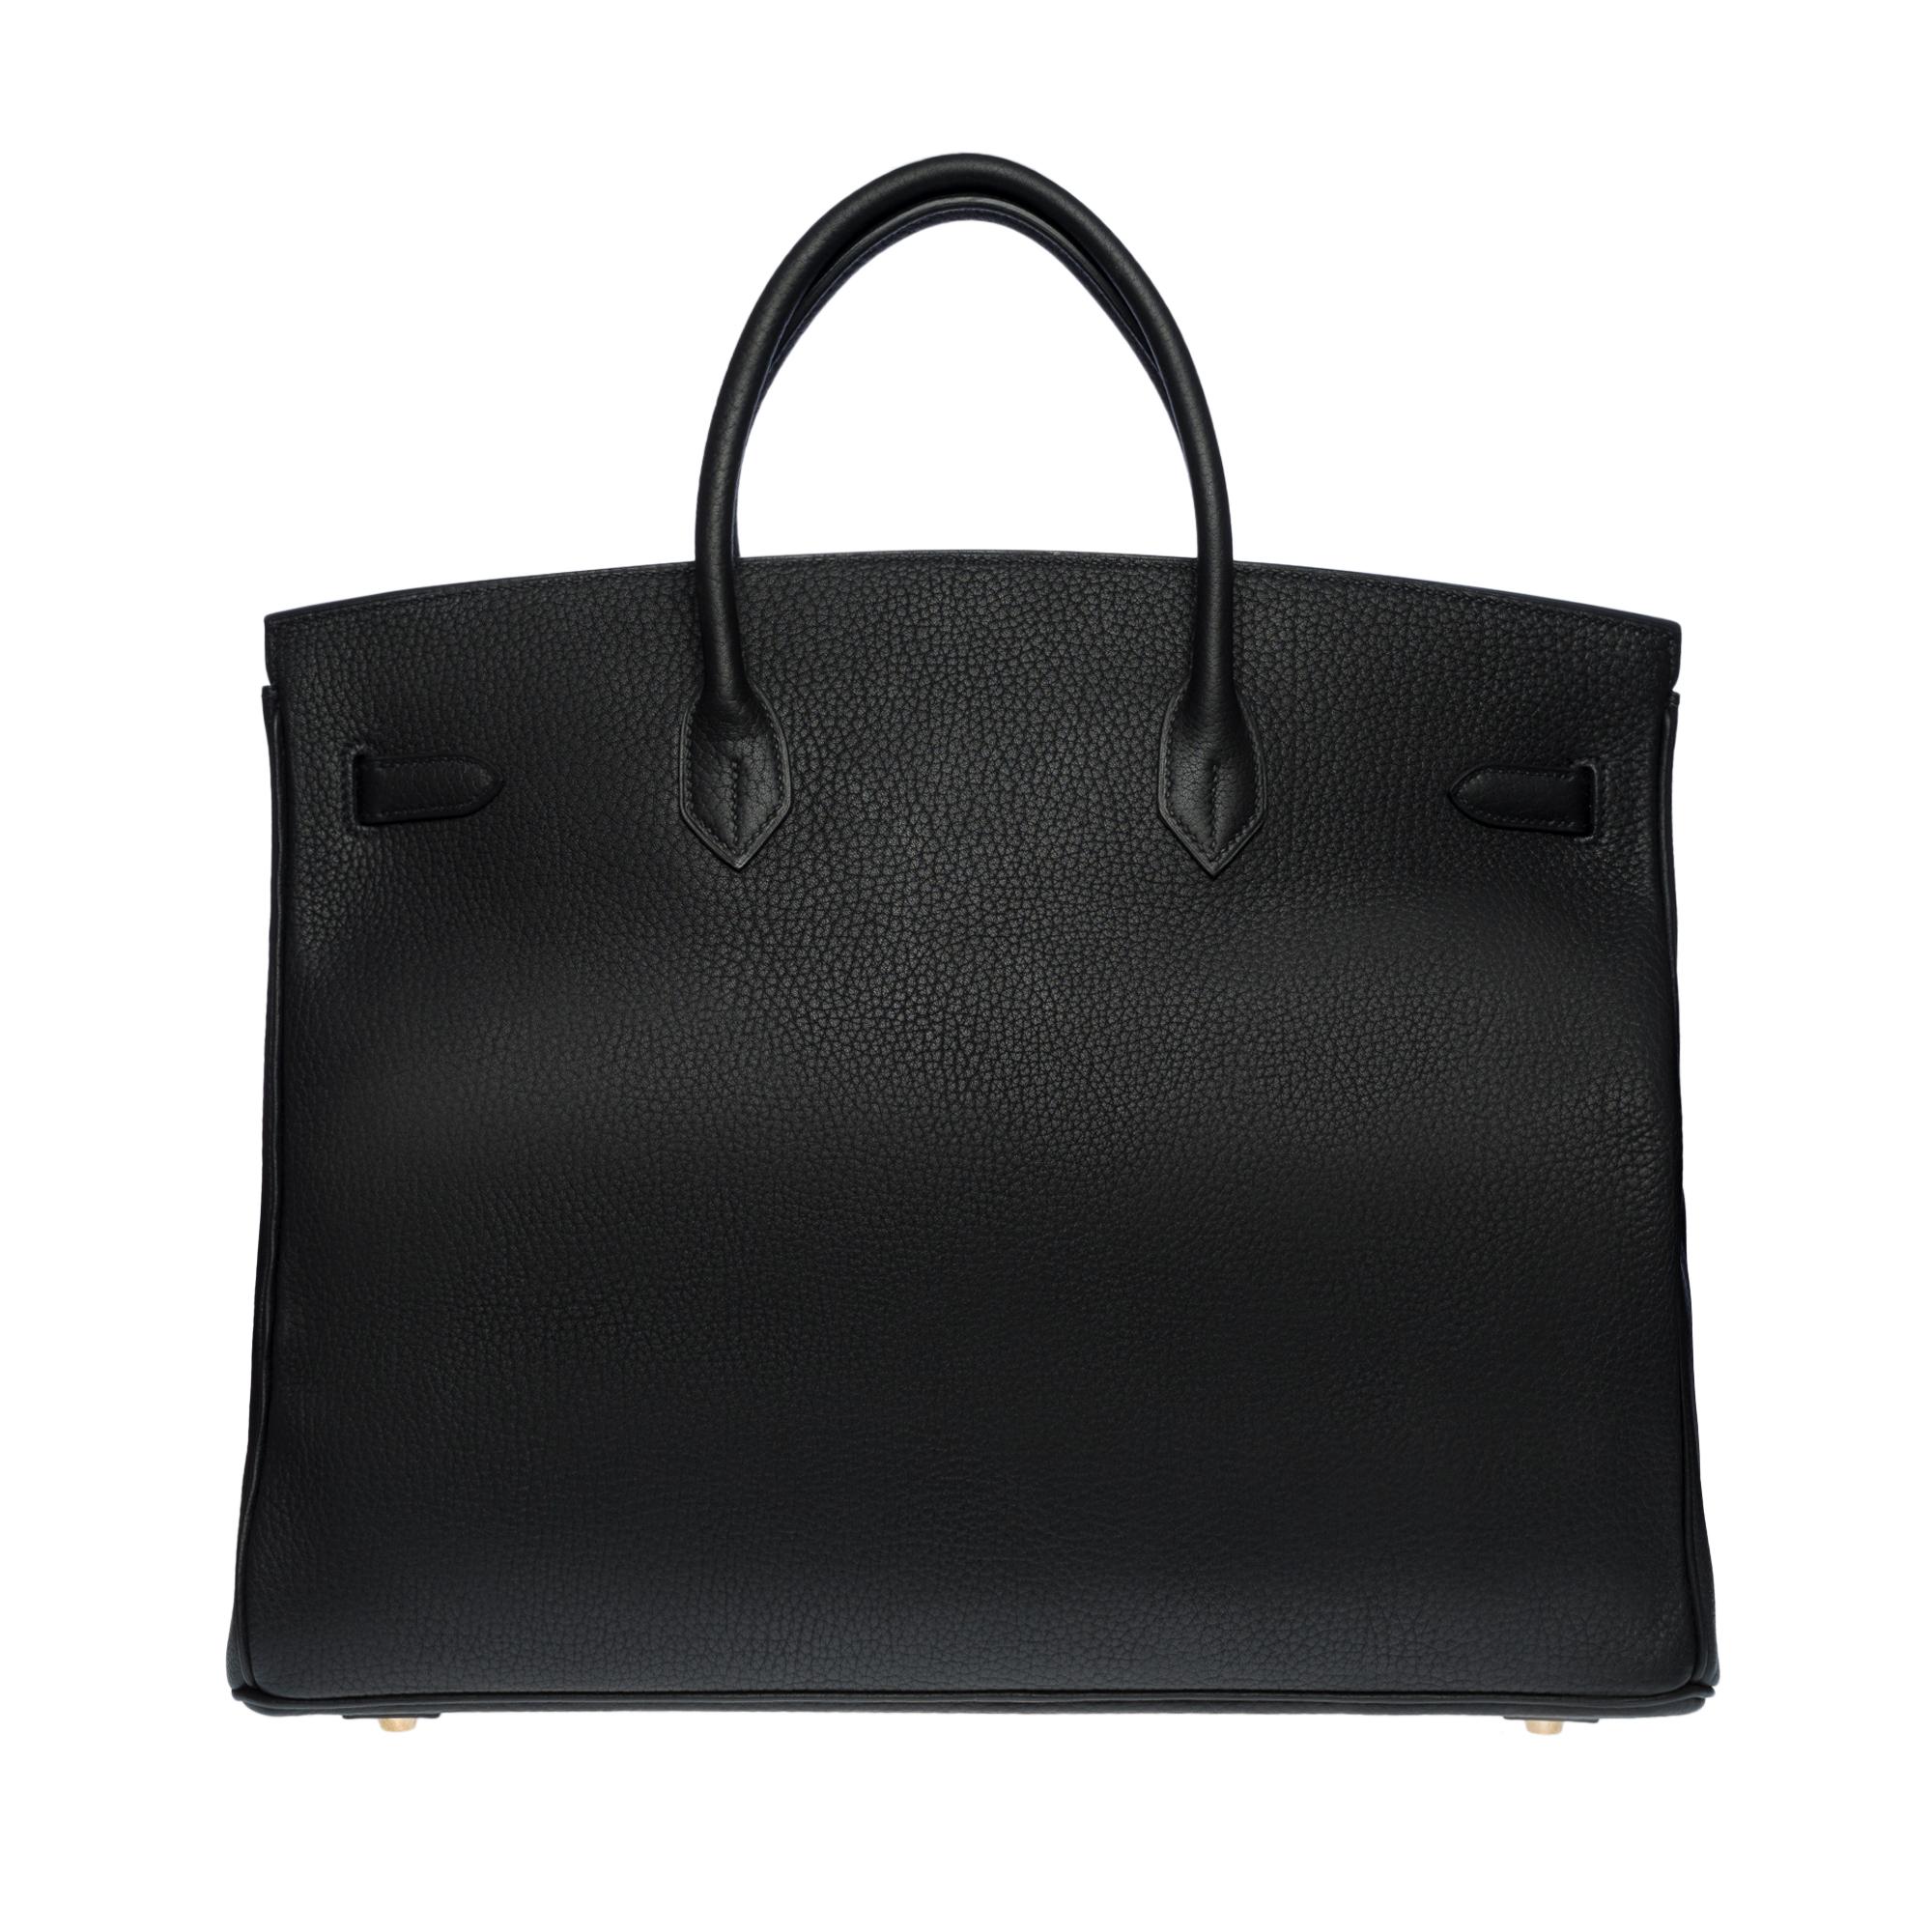 Stunning Hermes Birkin 40cm handbag in Black Togo leather, GHW In Excellent Condition In Paris, IDF